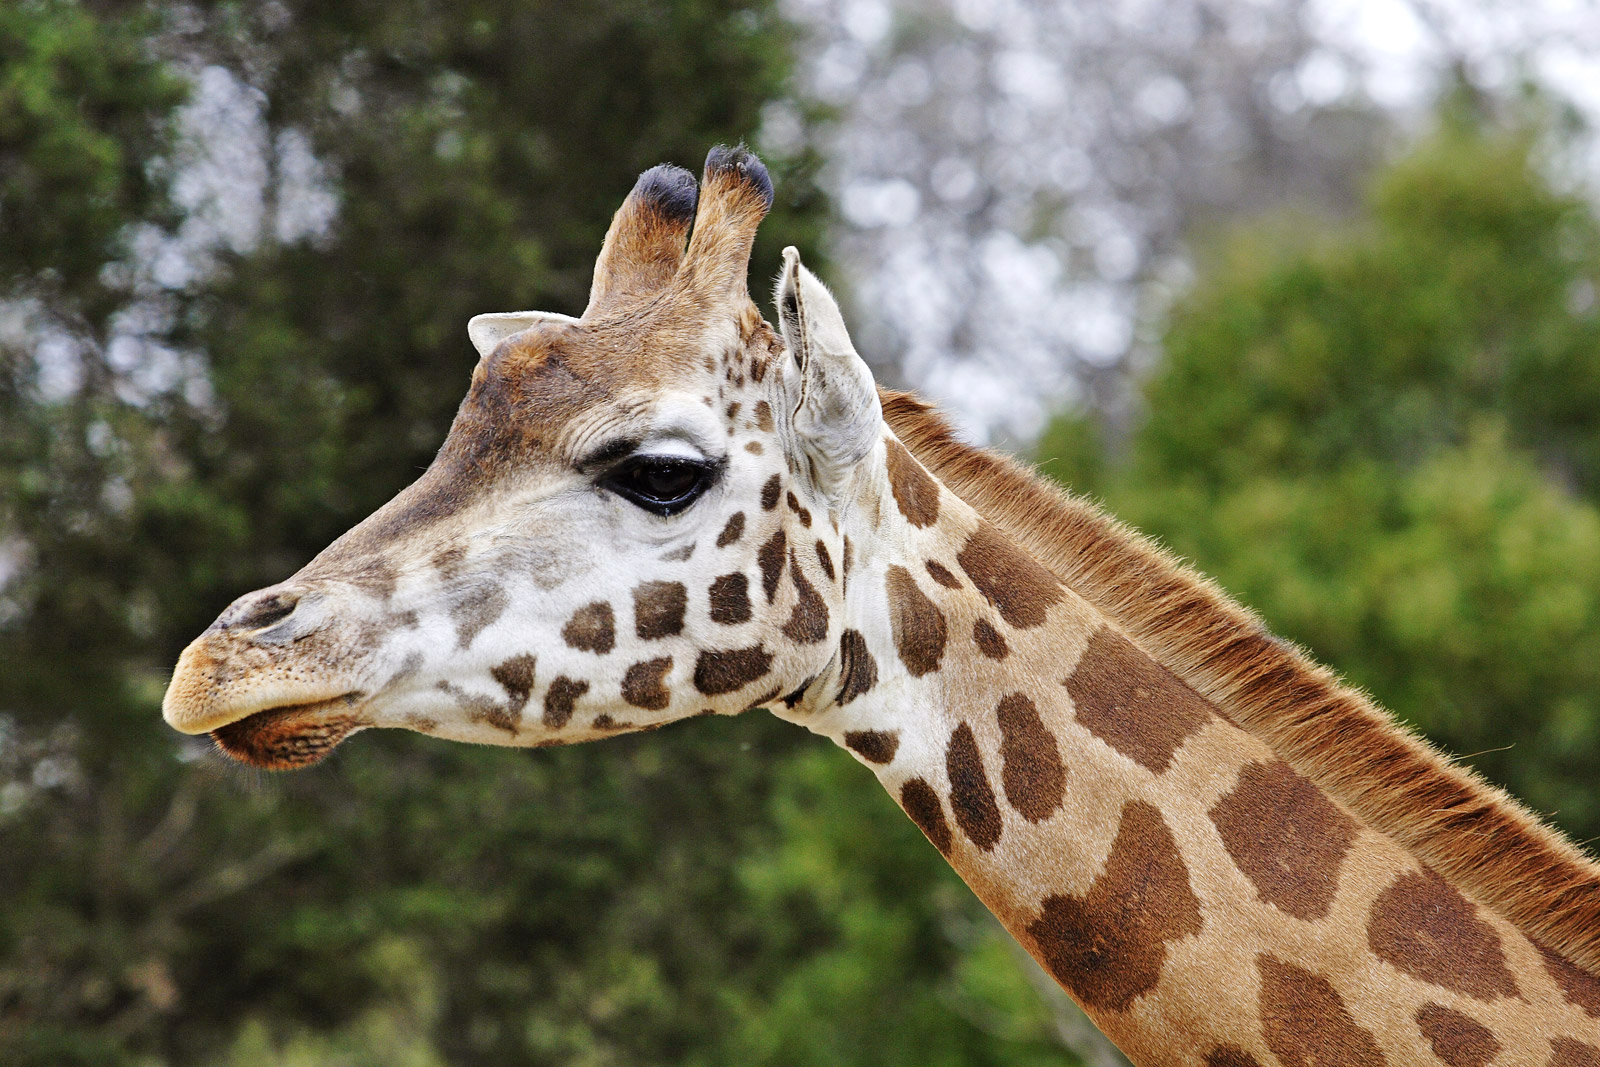 Giraffe Pics, Animal Collection